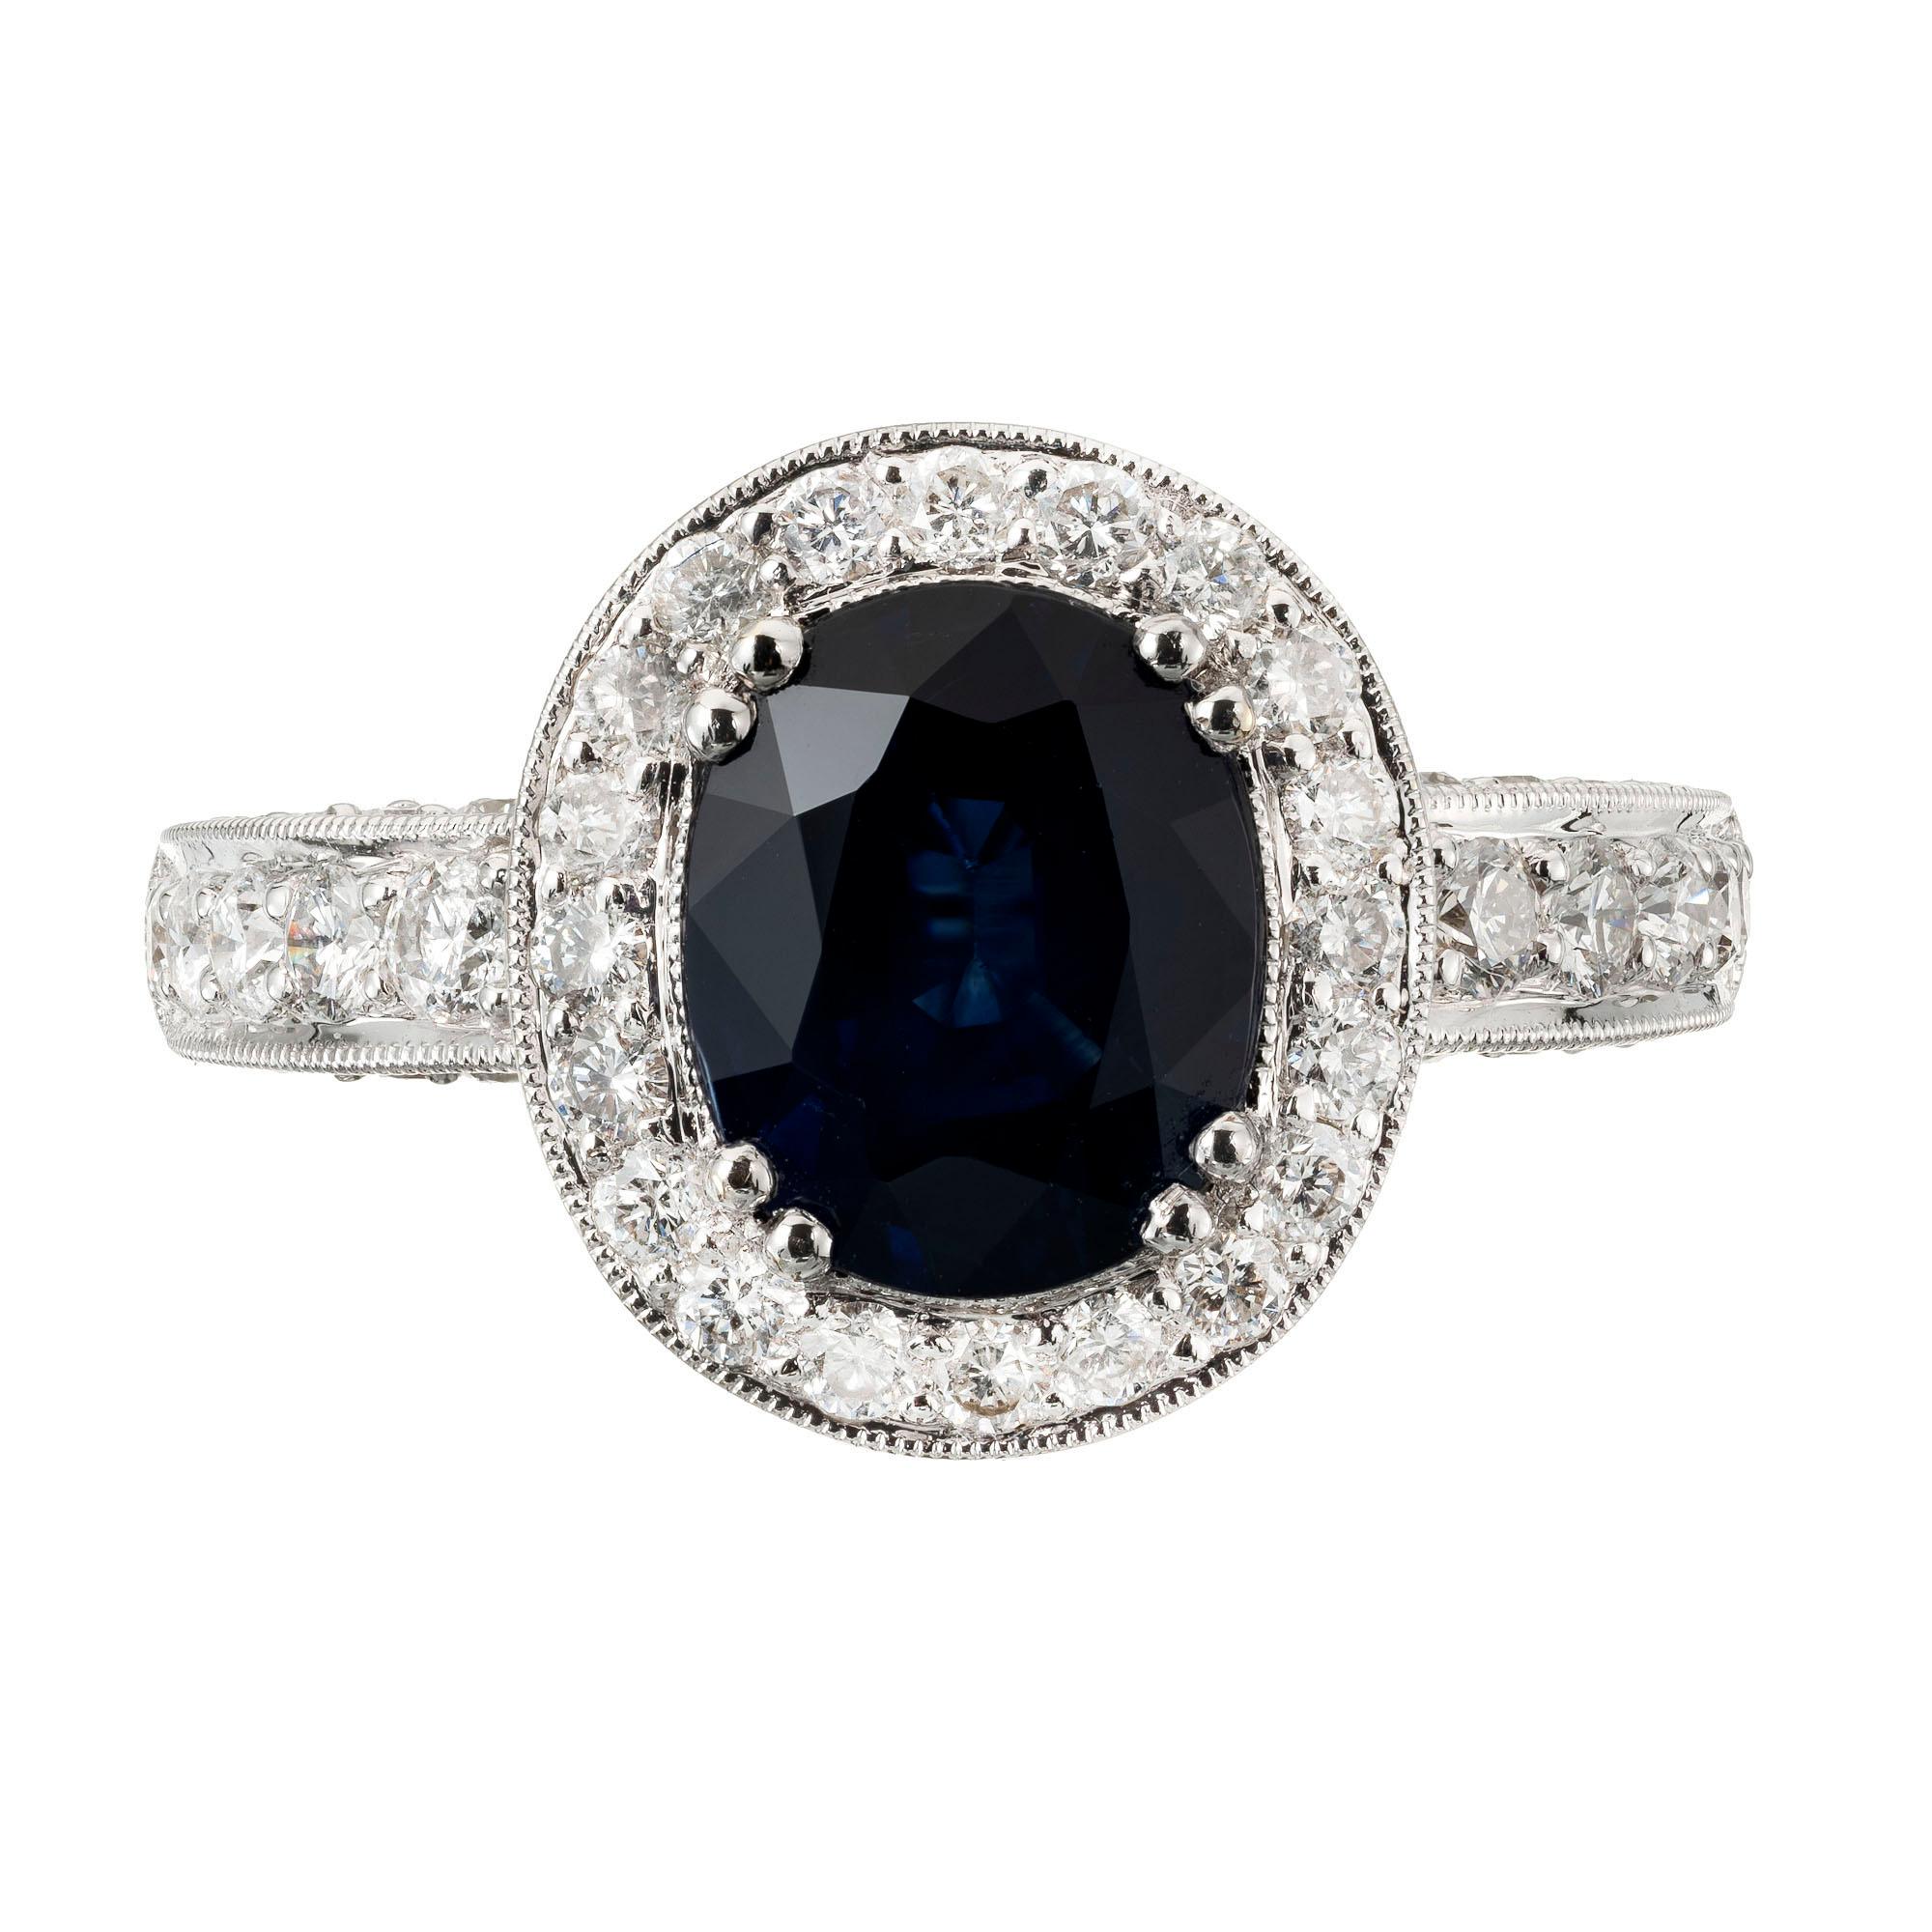 Ovaler Royal Blue Sapphire Diamant Halo-Verlobungsring. Ovaler Mittelstein aus natürlichem Saphir, GIA-zertifiziert, mit einem Kranz aus strahlend weißen Brillanten. 

1 ovaler blauer natürlicher Saphir mit einem Gesamtgewicht von ca. 3,48cts, GIA